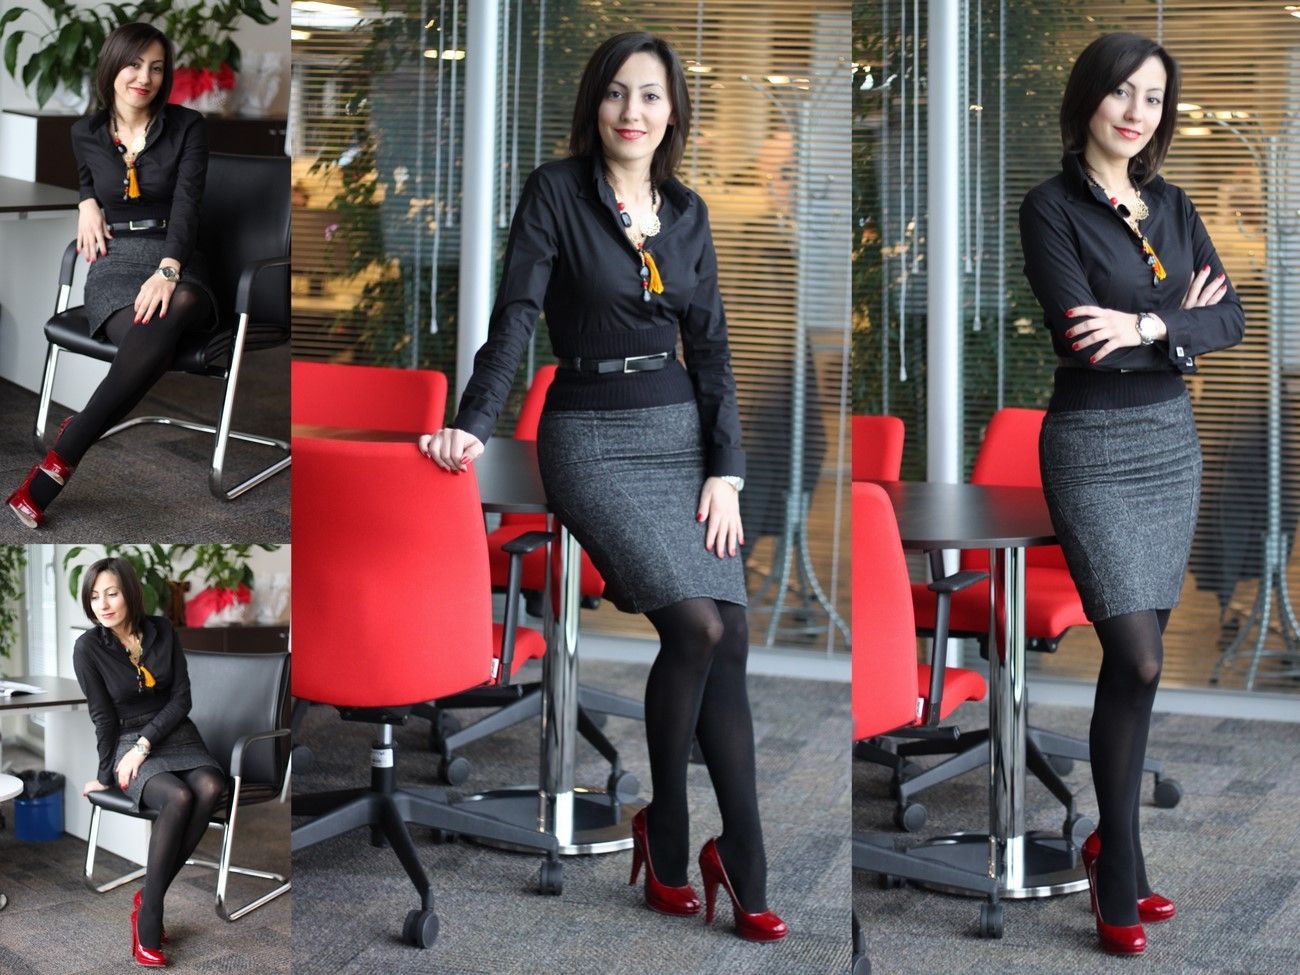 Business women pantyhose high heels